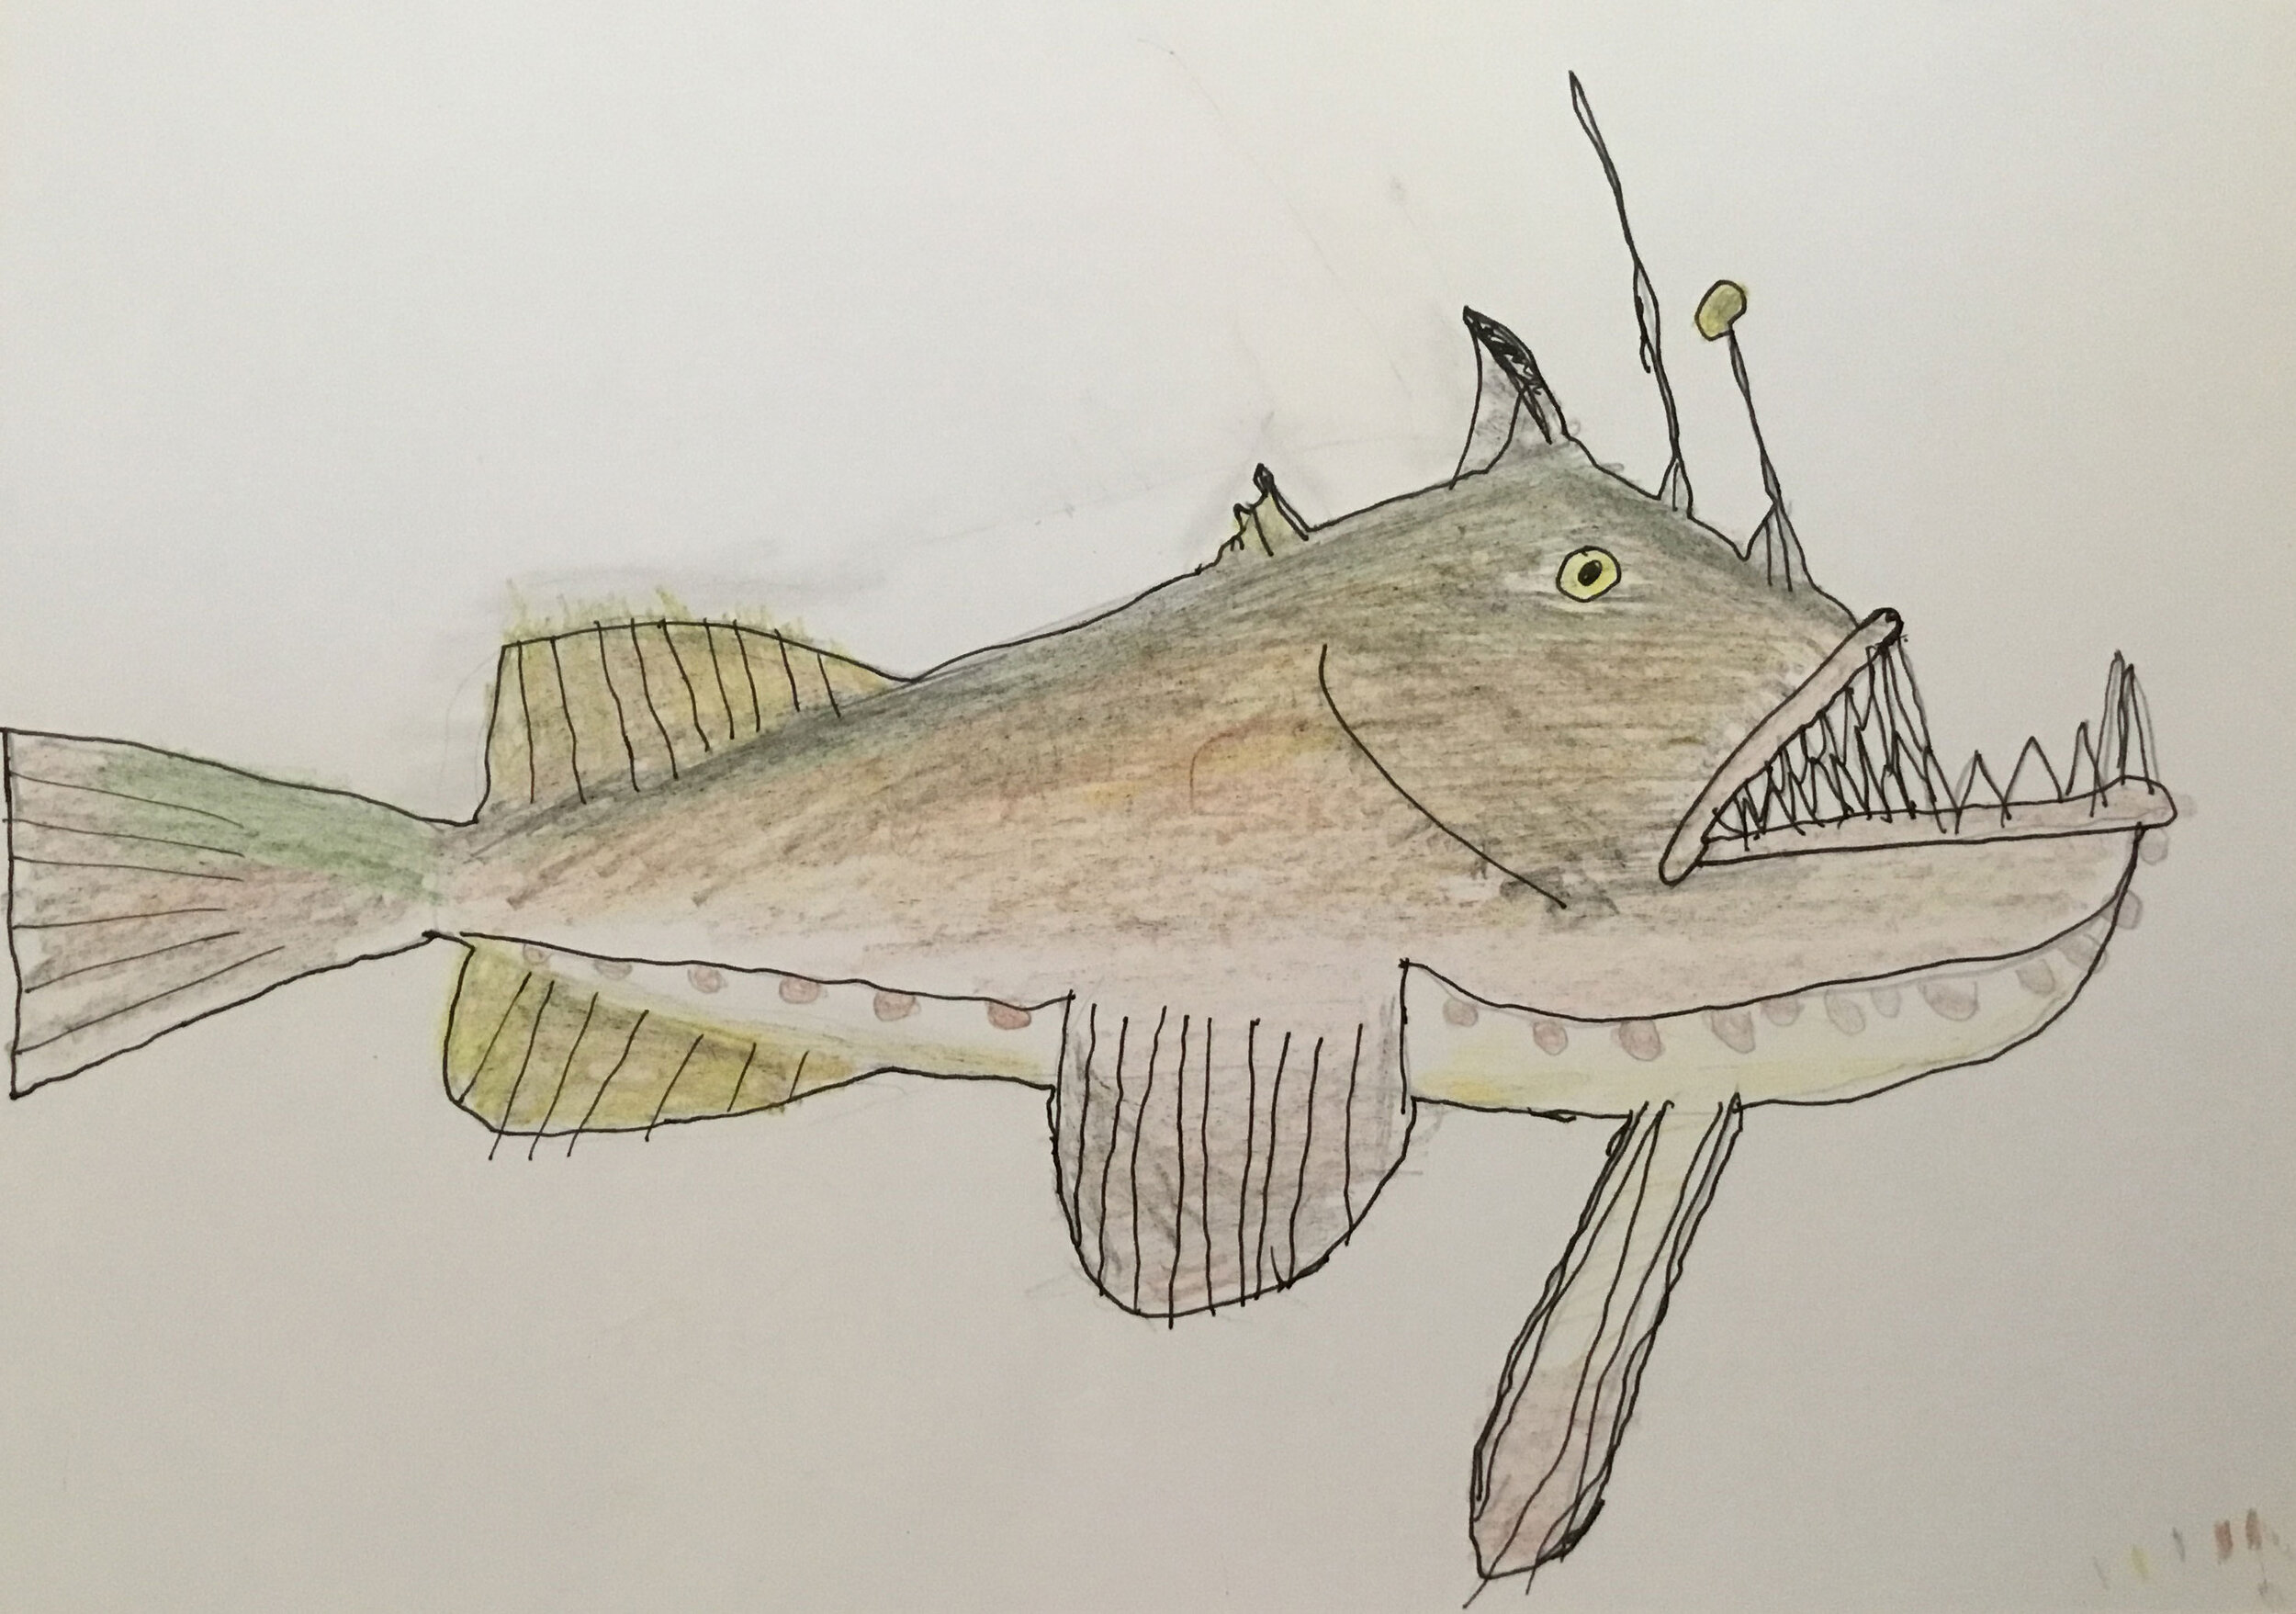 The Monkfish by Finn Lyon age 8